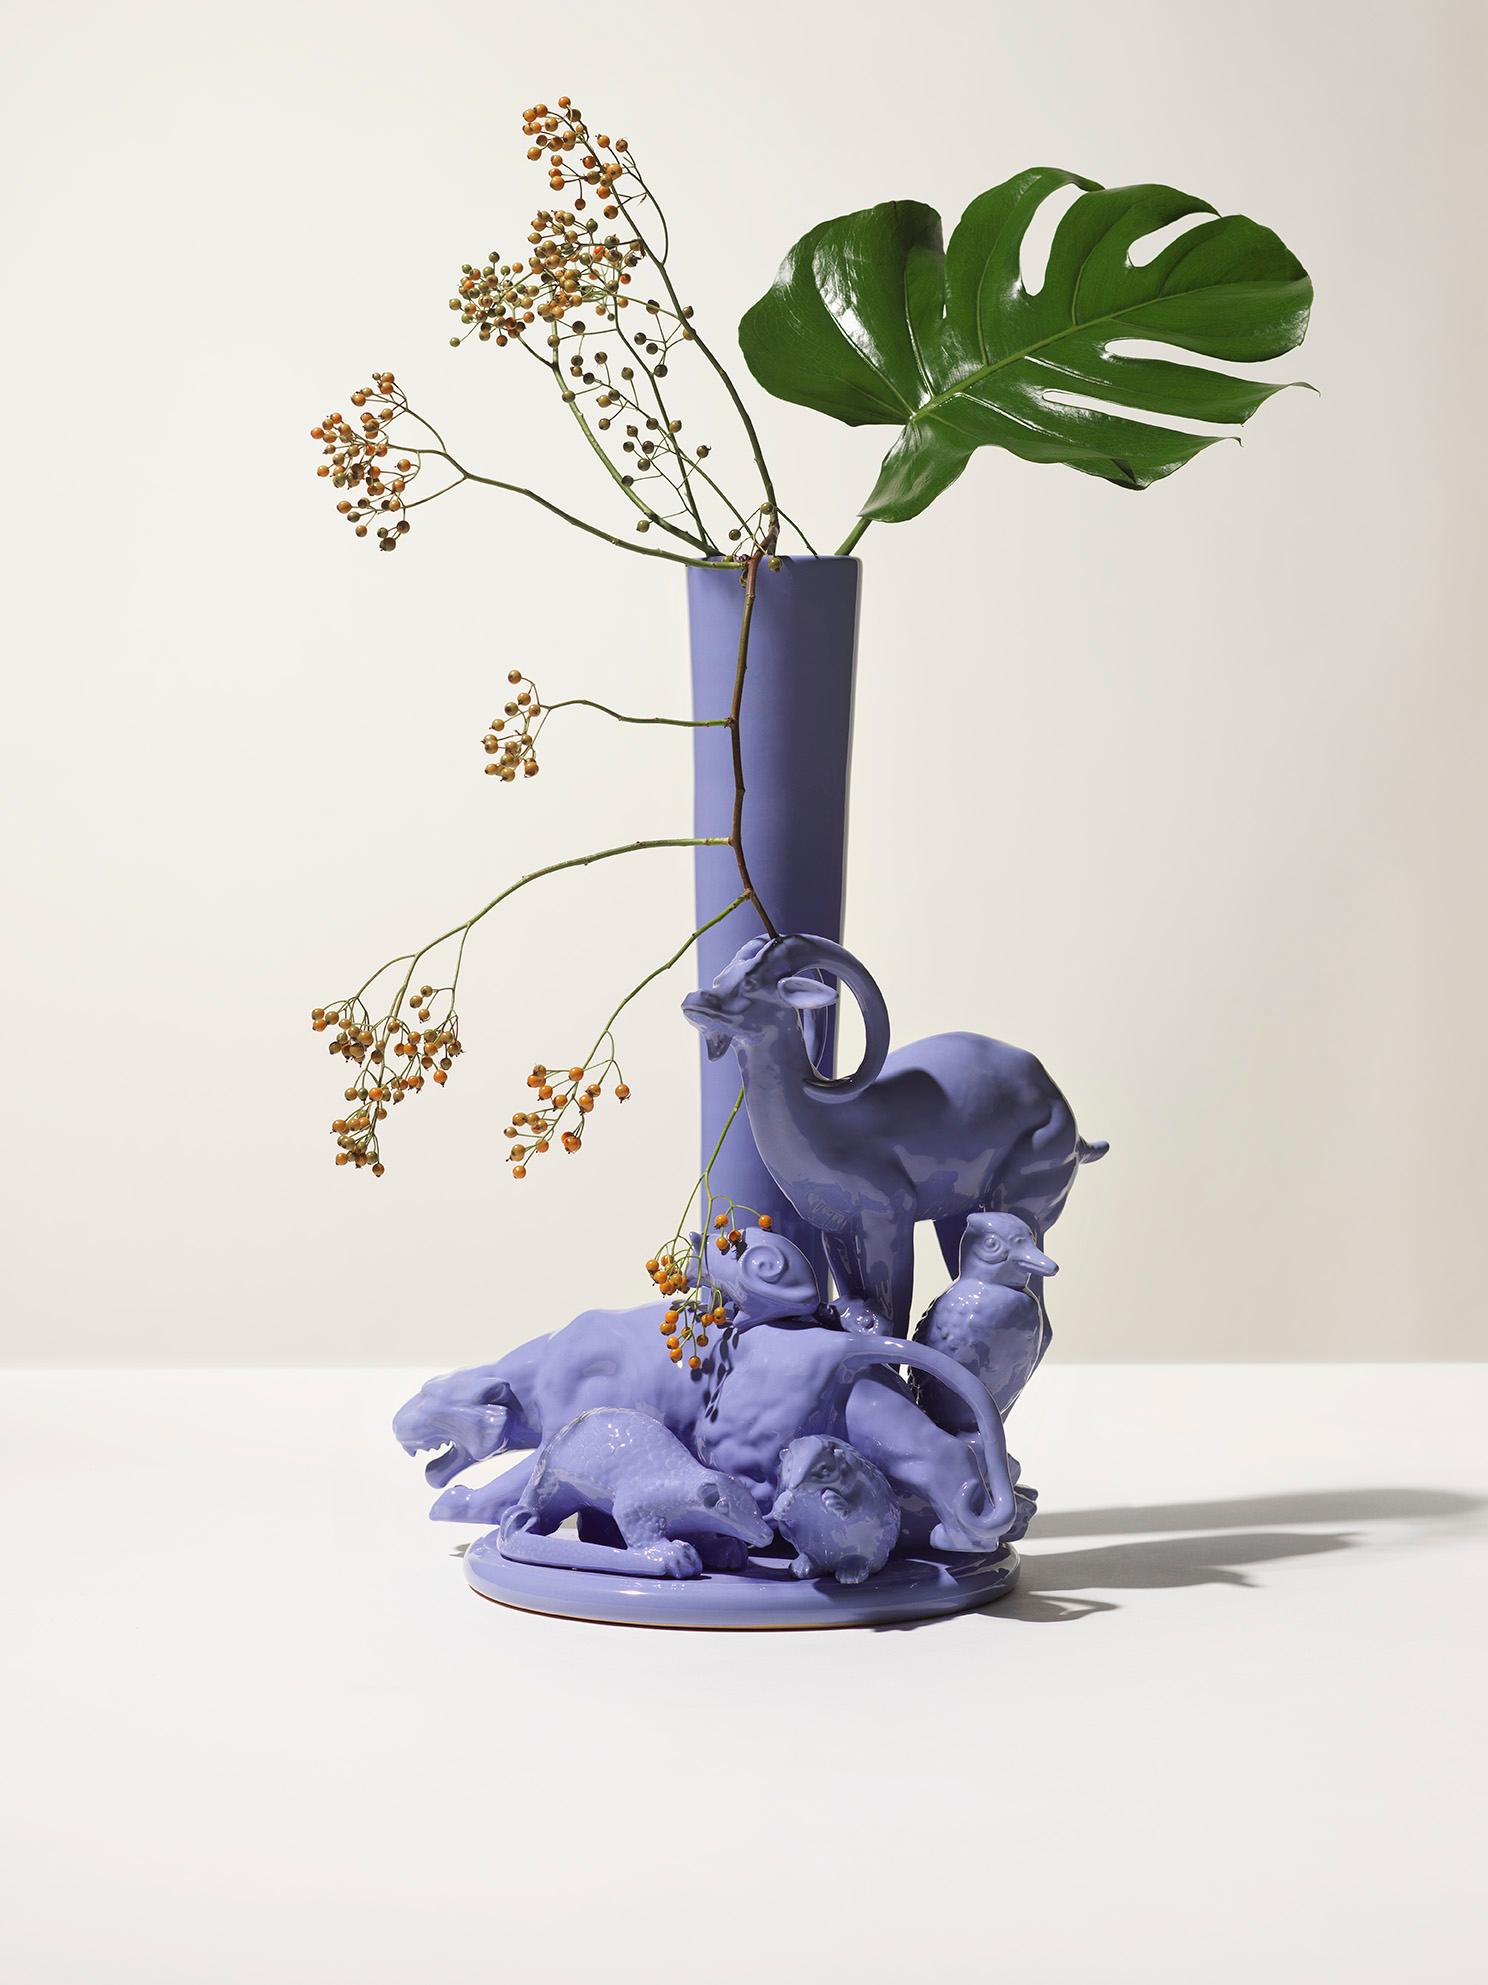 vase sculpture du 21e siècle en forme de bouquetin gris-bleu, de Ceramica Gatti, Italie. Pièce unique fabriquée en Italie, cette pièce de poterie a été conçue par Andrea Anastasio dans l'historique Bottega Ceramica Gatti 1928 à Faenza, spécialisée